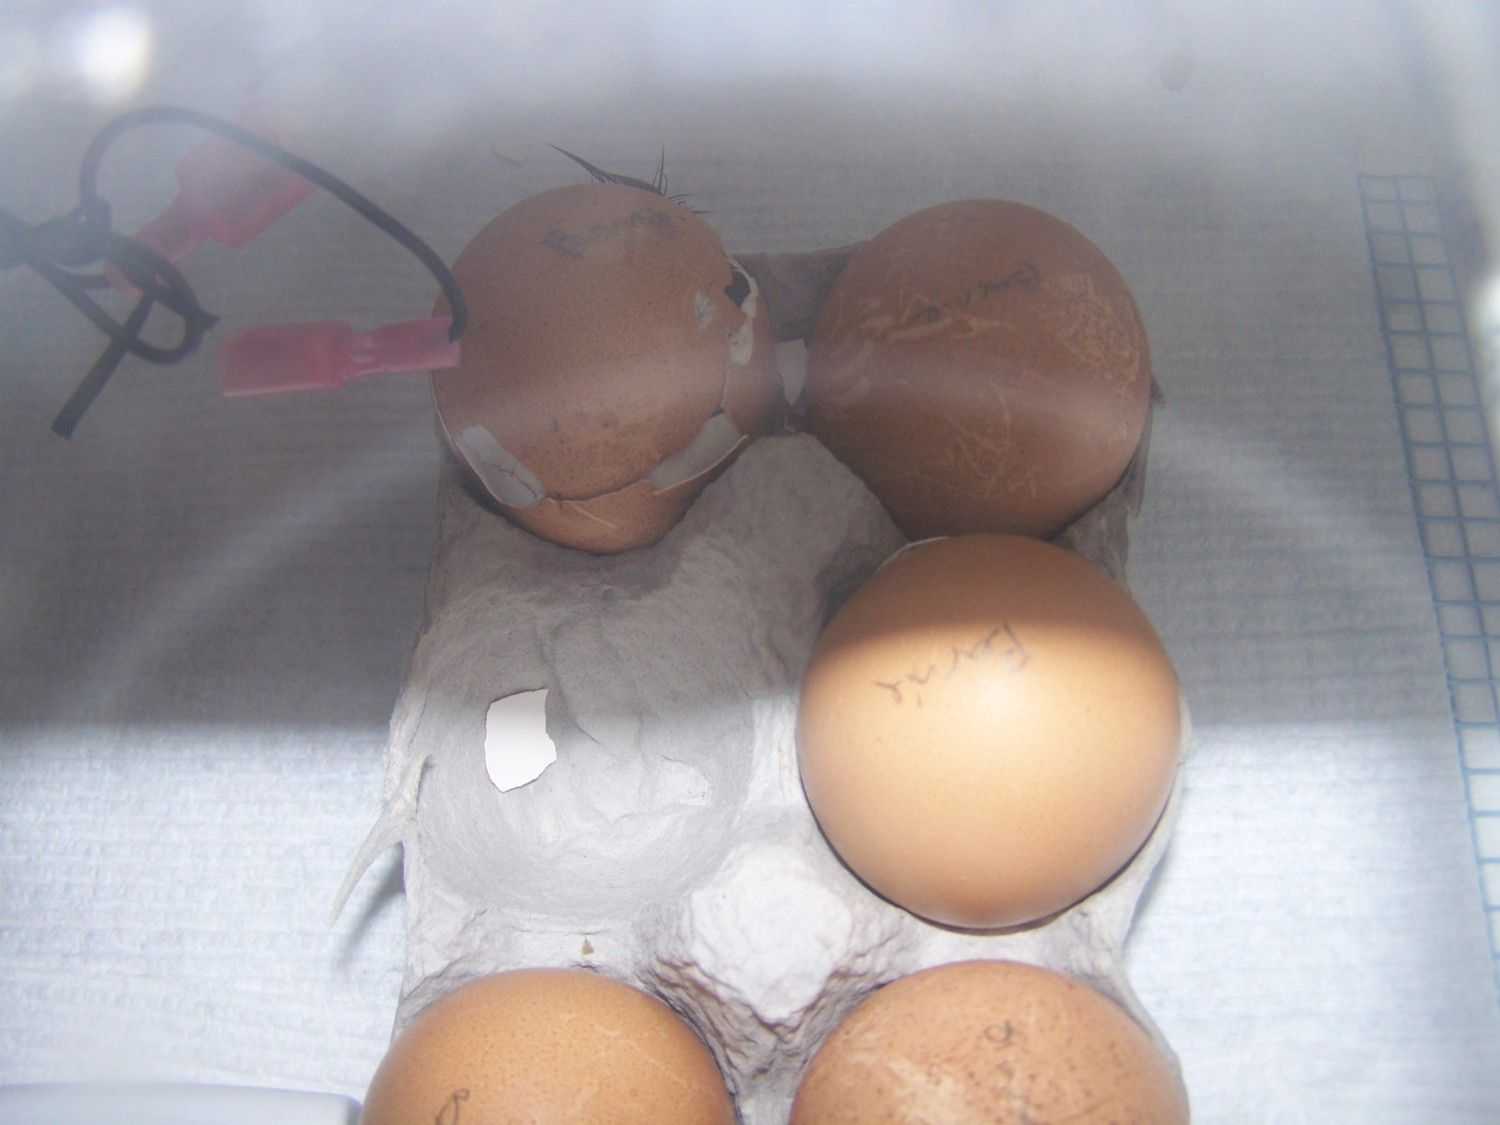 Barnevelder Eggs